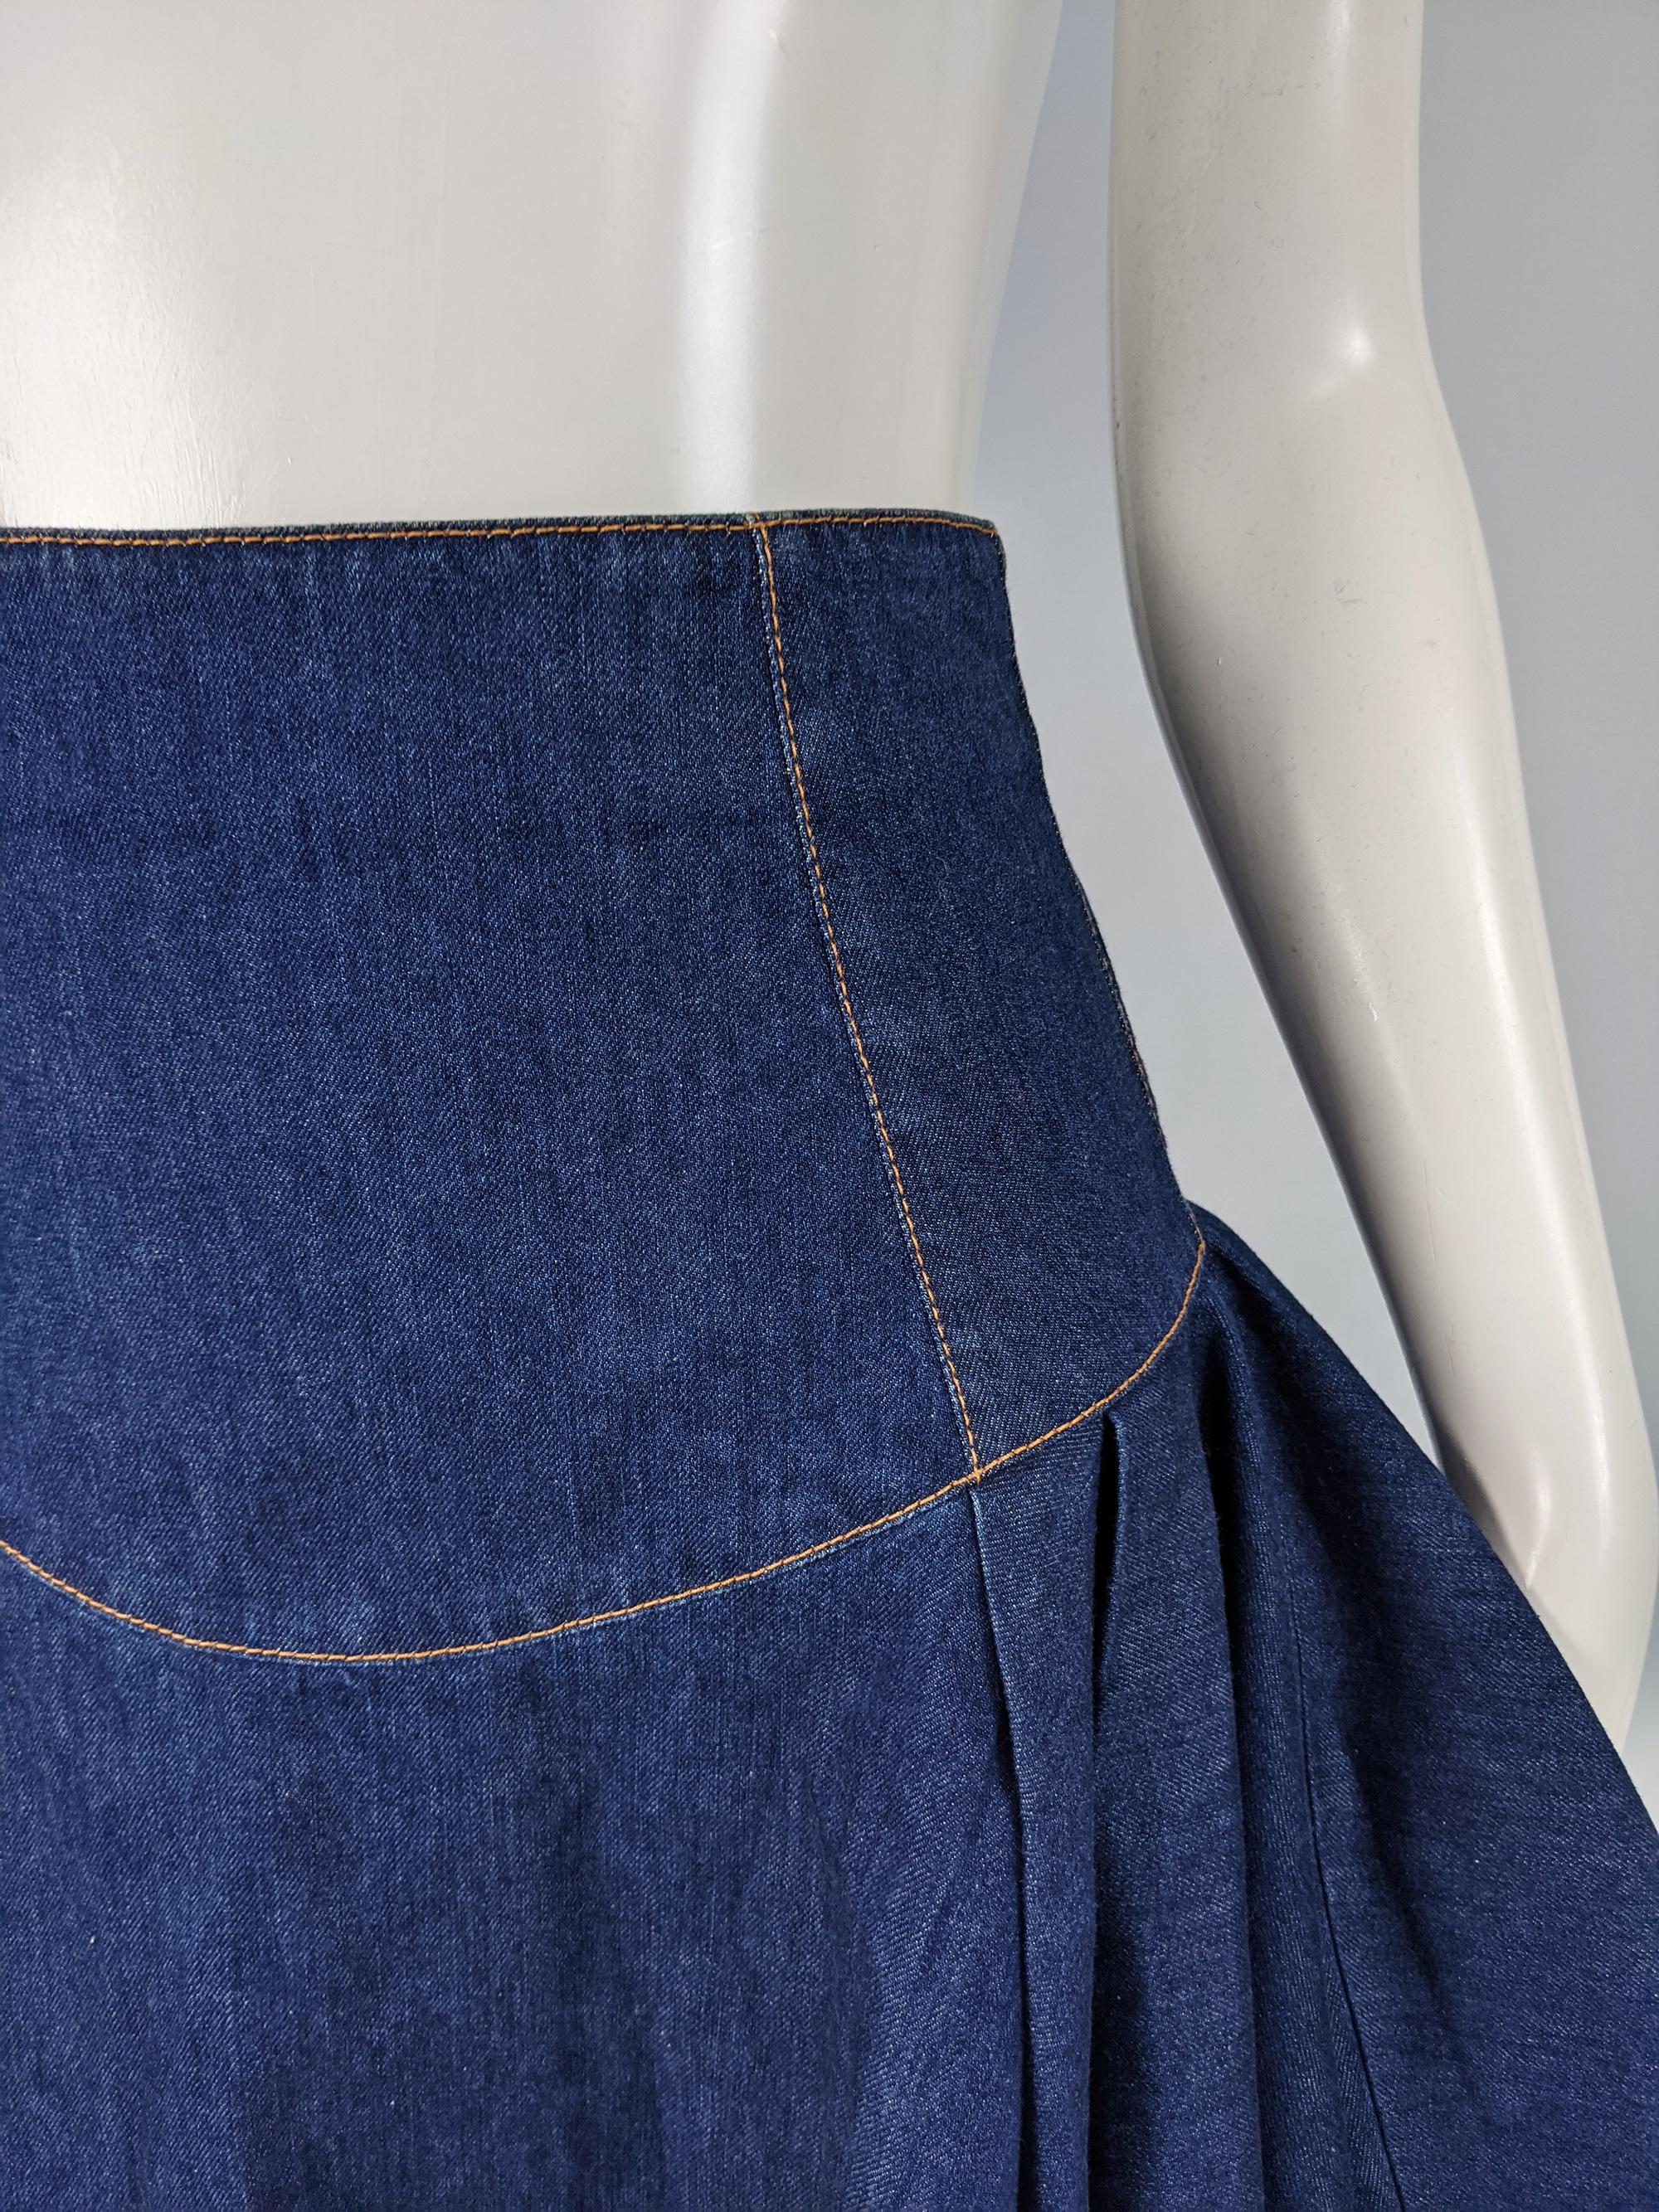 Alexander McQueen Blue Denim Flared Skirt For Sale 5